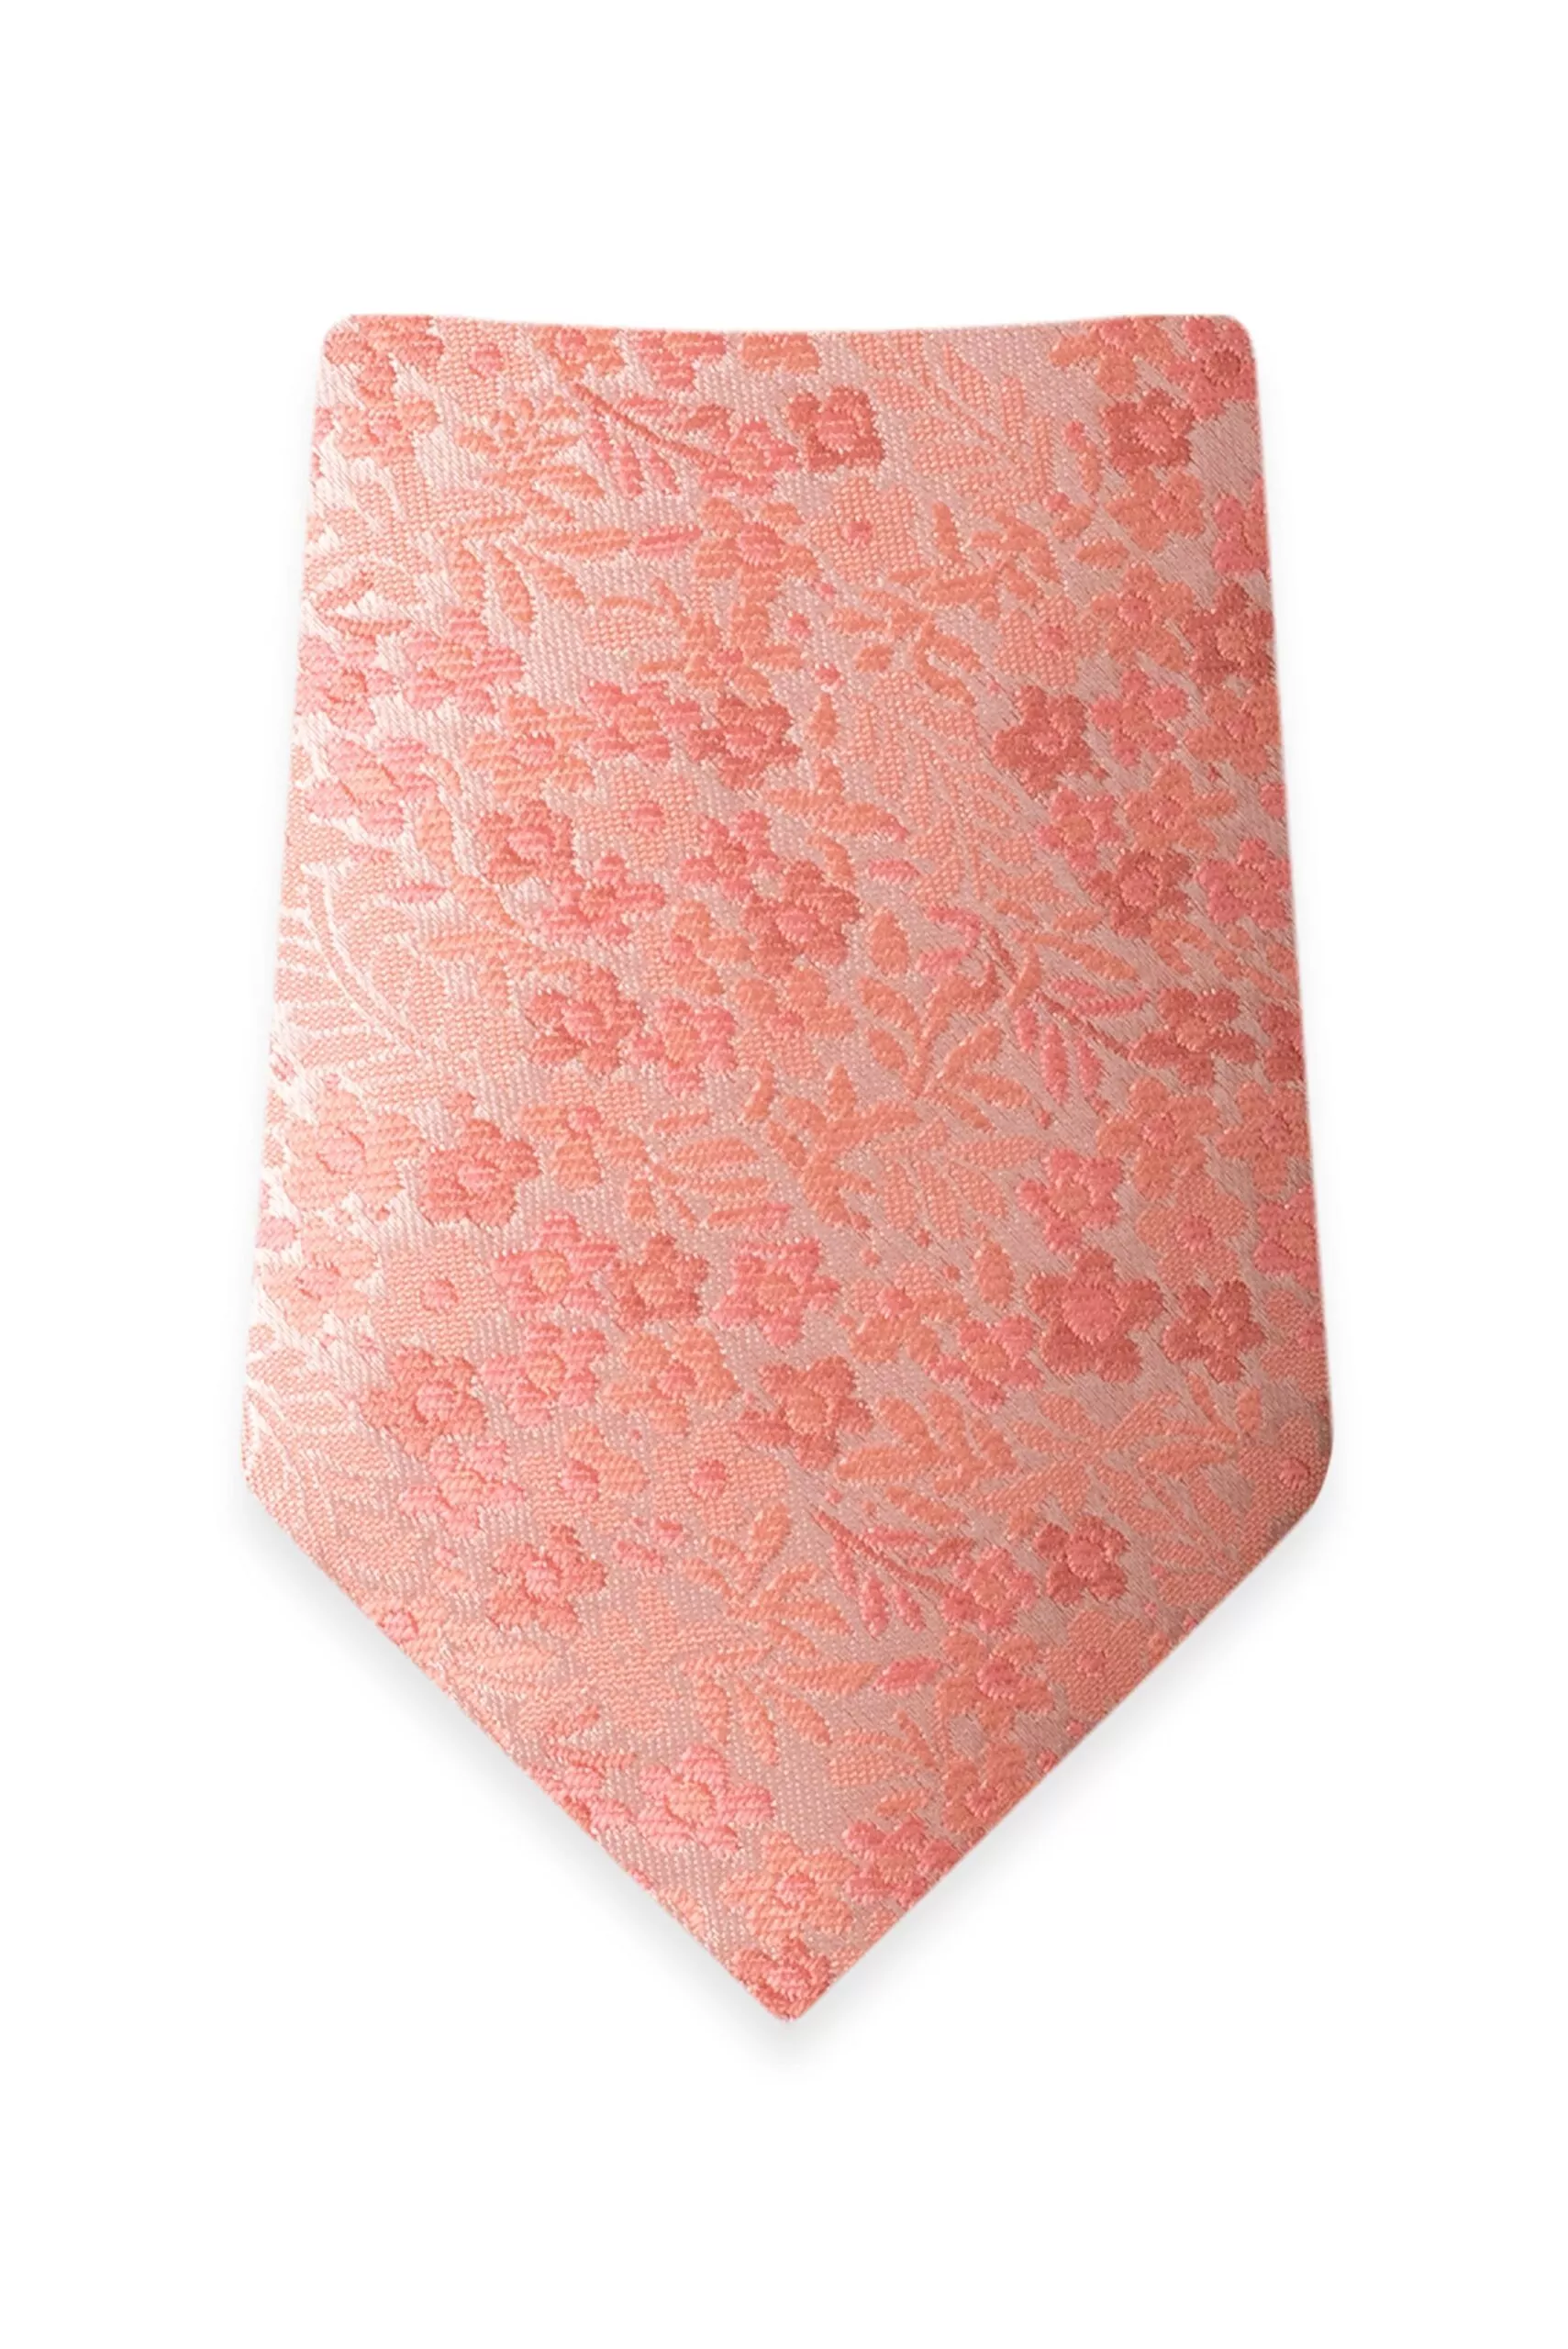 Floral Dark Coral Self-Tie Windsor Tie